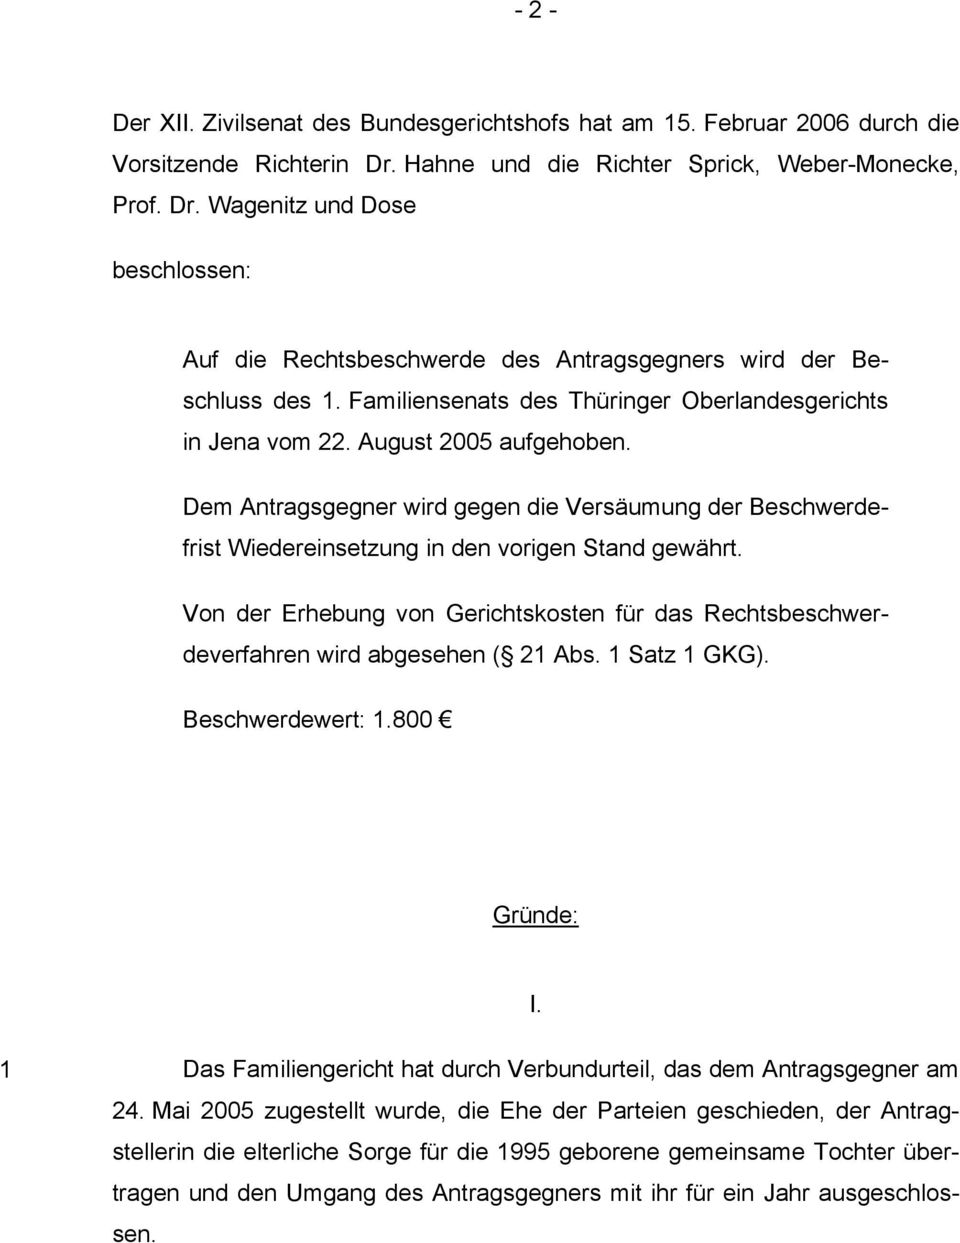 Familiensenats des Thüringer Oberlandesgerichts in Jena vom 22. August 2005 aufgehoben. Dem Antragsgegner wird gegen die Versäumung der Beschwerdefrist Wiedereinsetzung in den vorigen Stand gewährt.